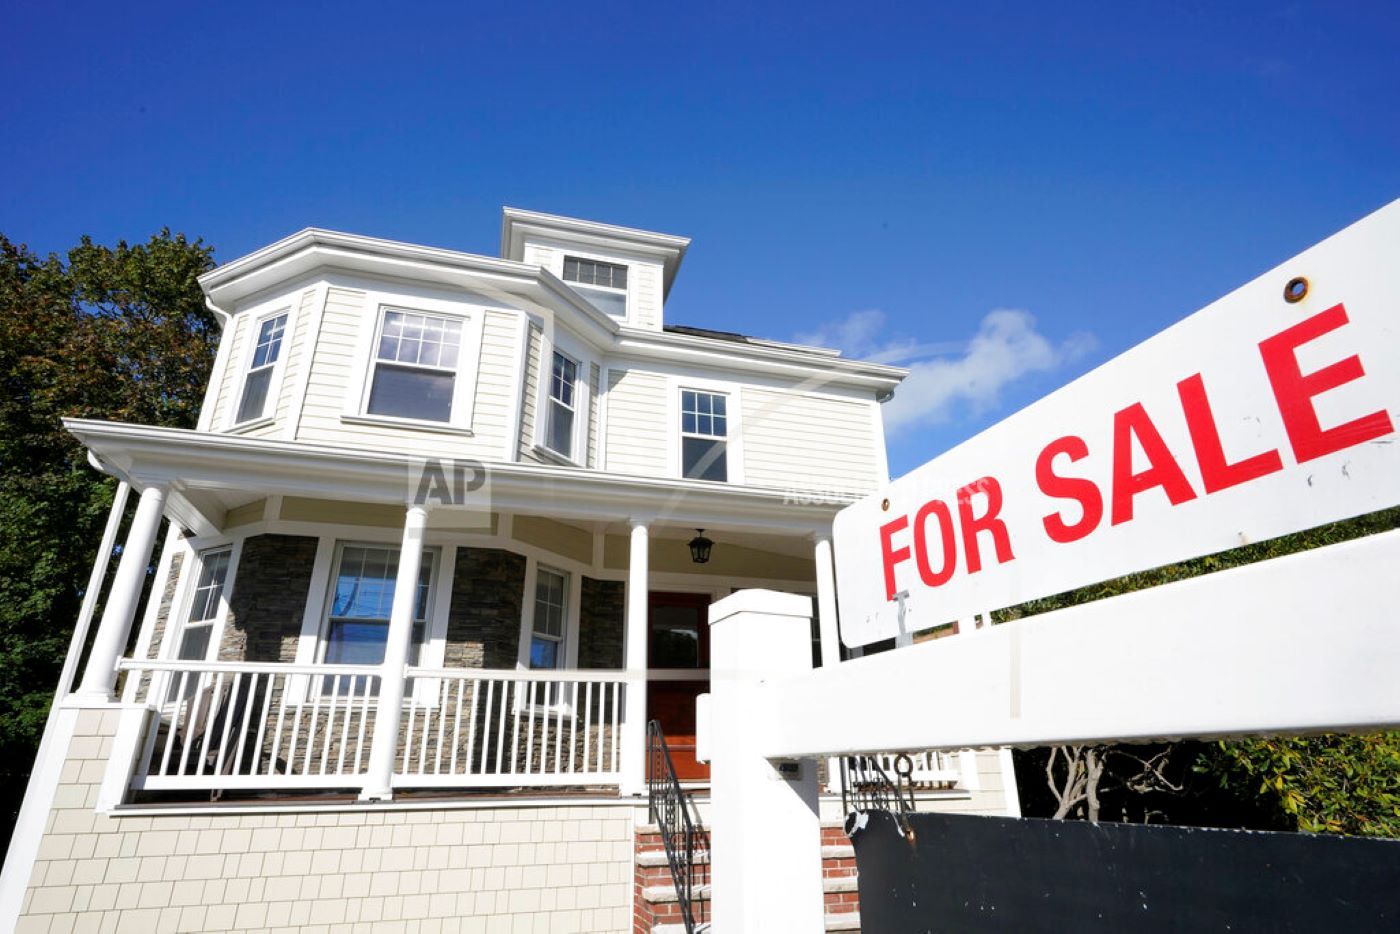 Desplome en ventas de viviendas en Florida hace temblar a inversionistas